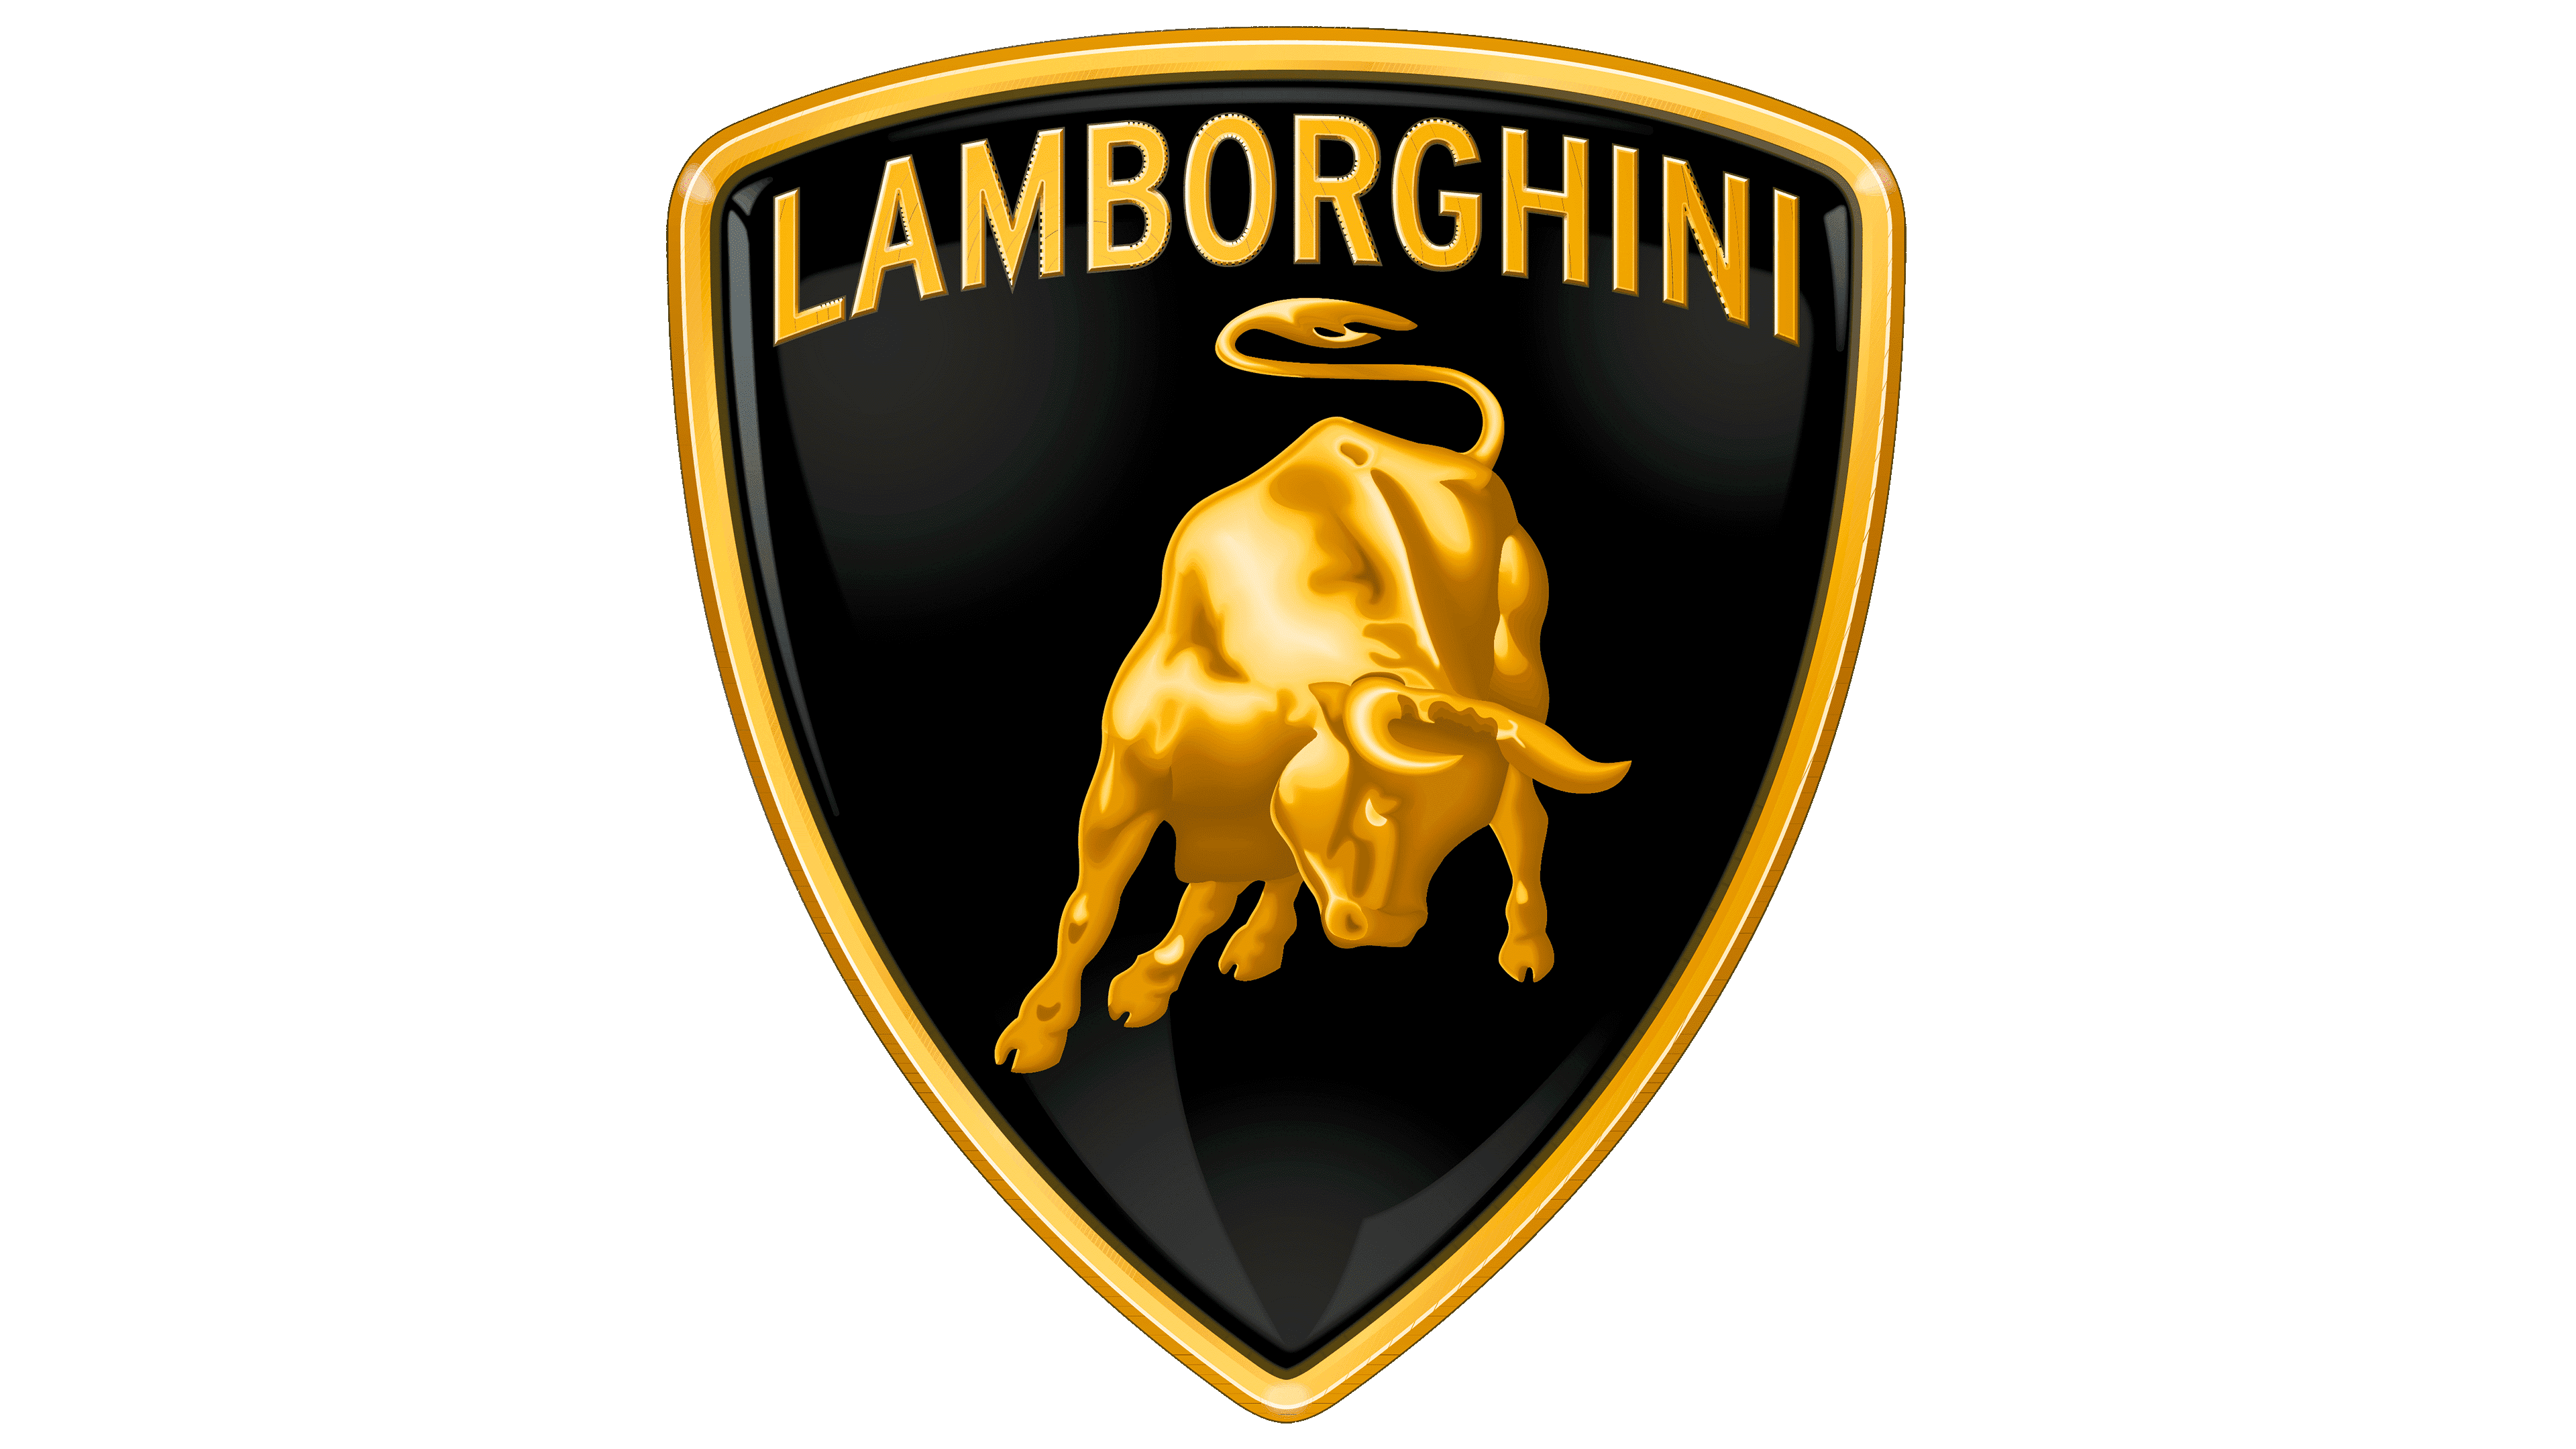 Lamborghini n’est pas à vendre confirme Volkswagen